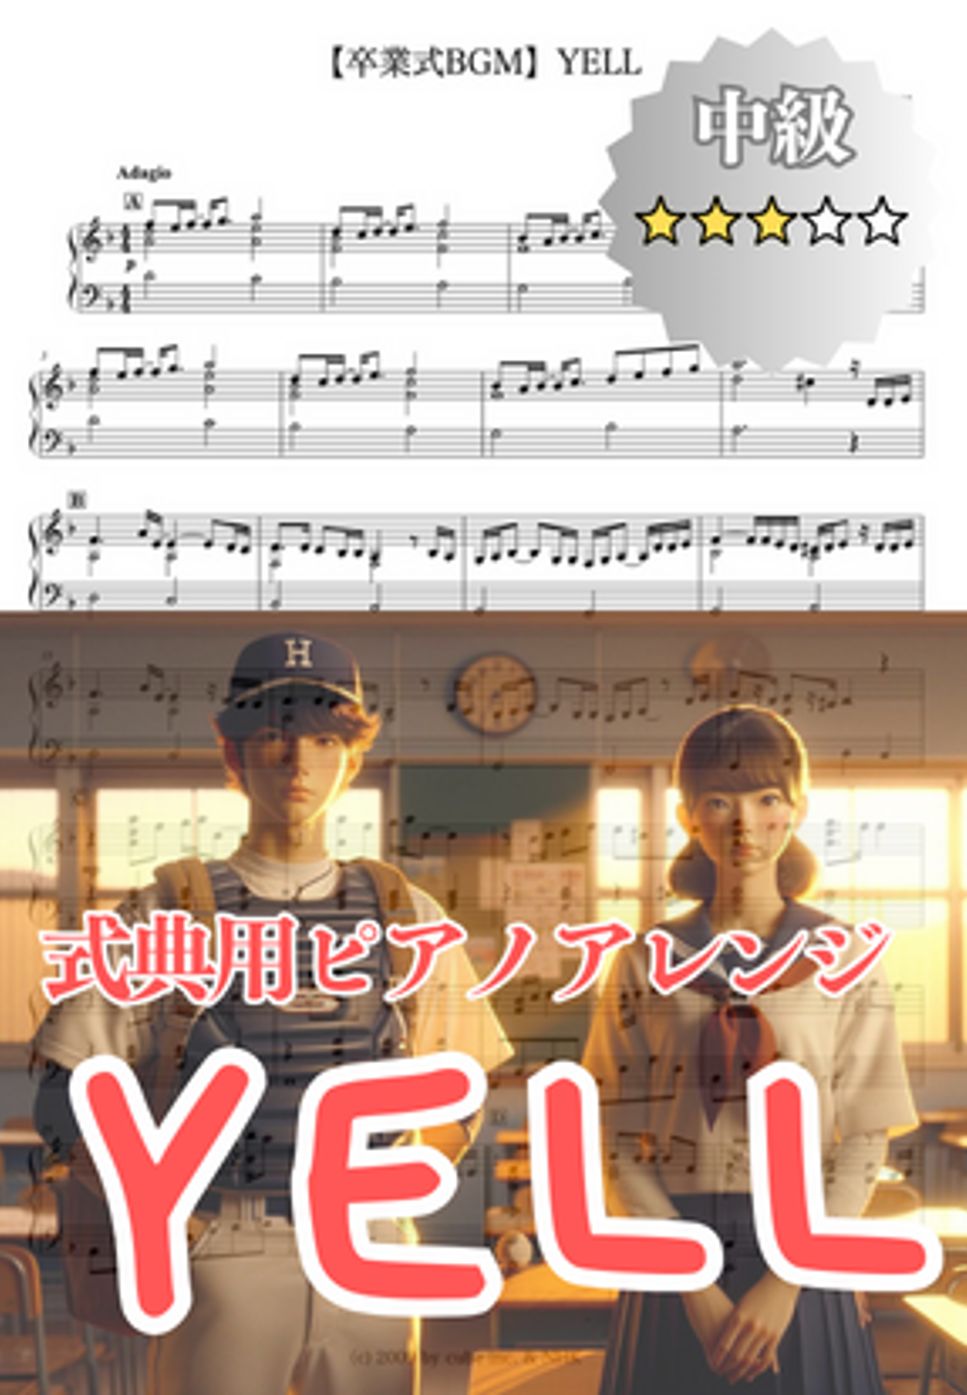 いきものがかり - 【卒業式BGM】YELL (卒業式/BGM) by cogito